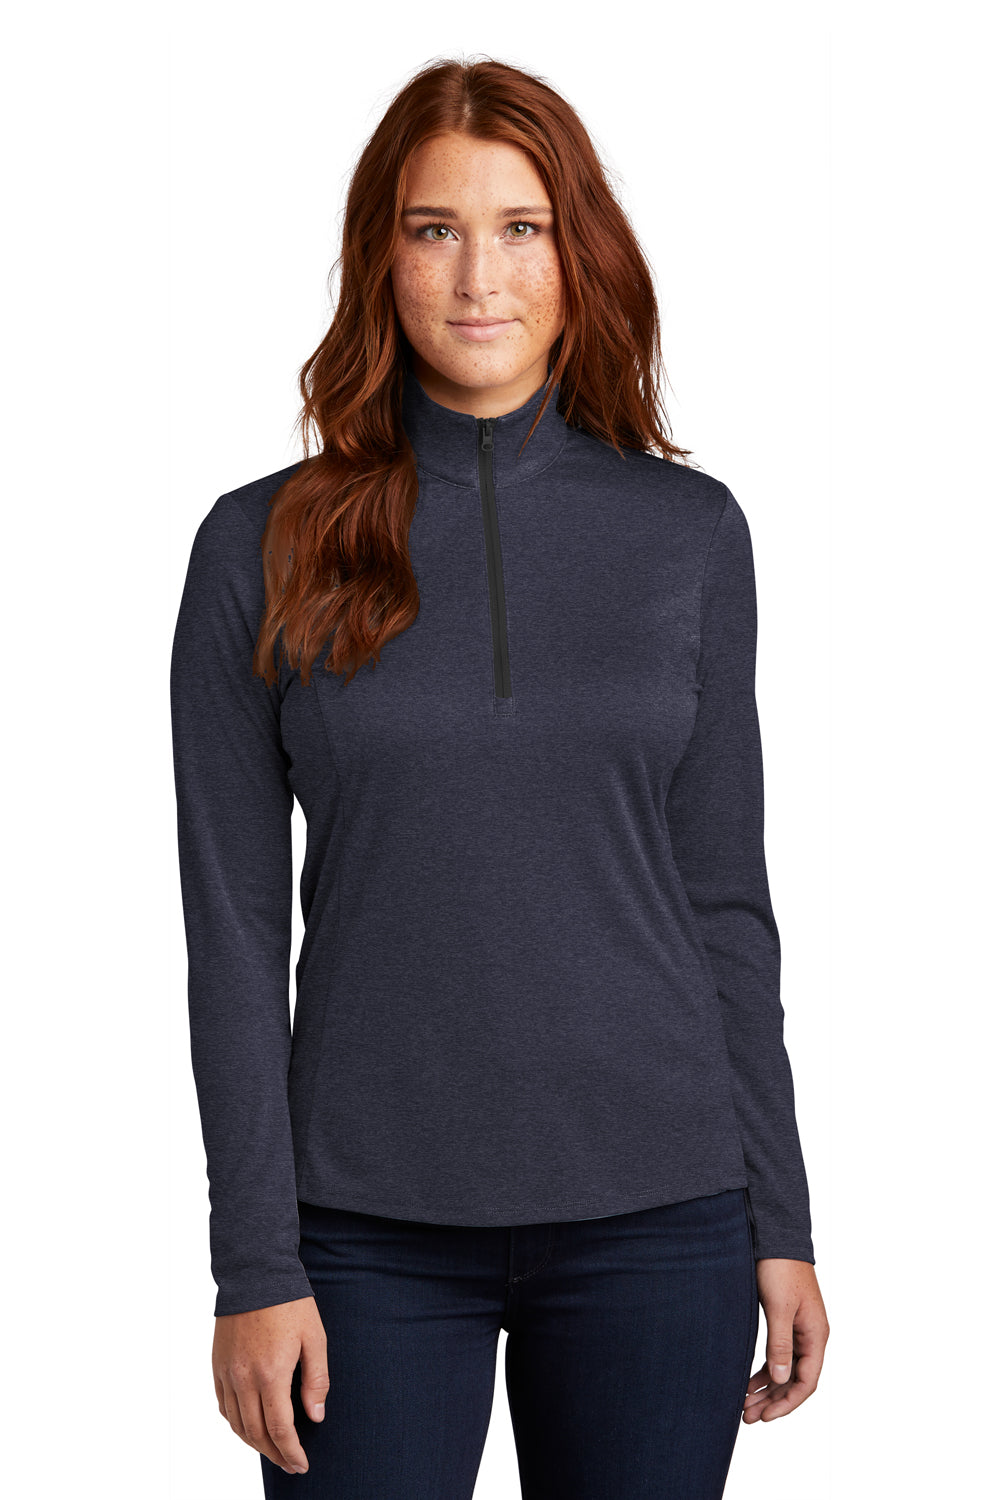 Sport-Tek Womens Endeavor 1/4 Zip Sweatshirt Heather Deep Navy Blue Front